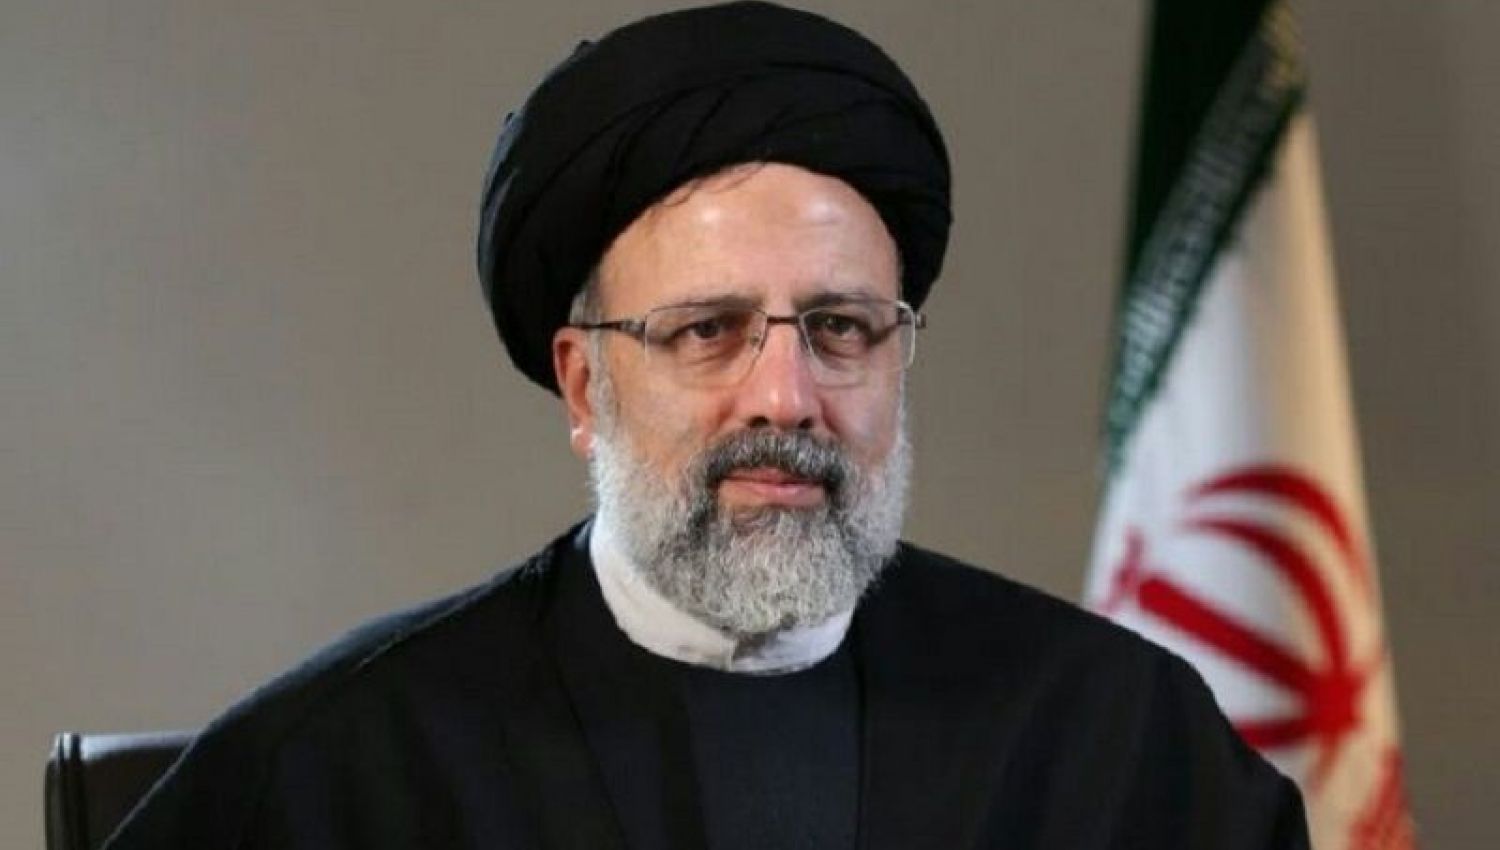 الرئيس الايراني المنتخب يعقد اول مؤتمر صحفي غدا الاثنين